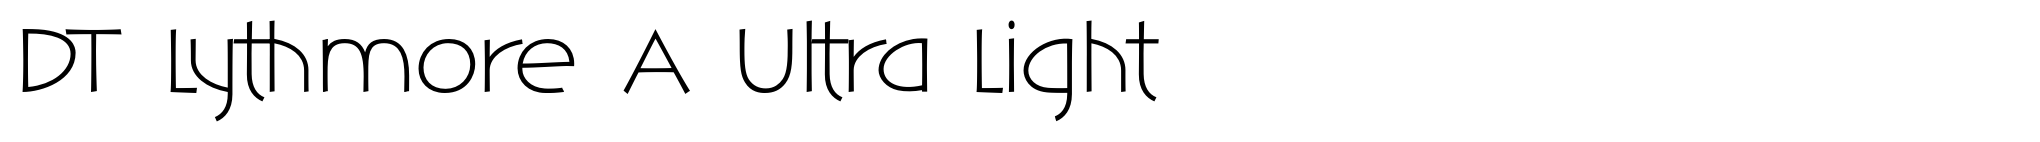 DT Lythmore A Ultra Light image